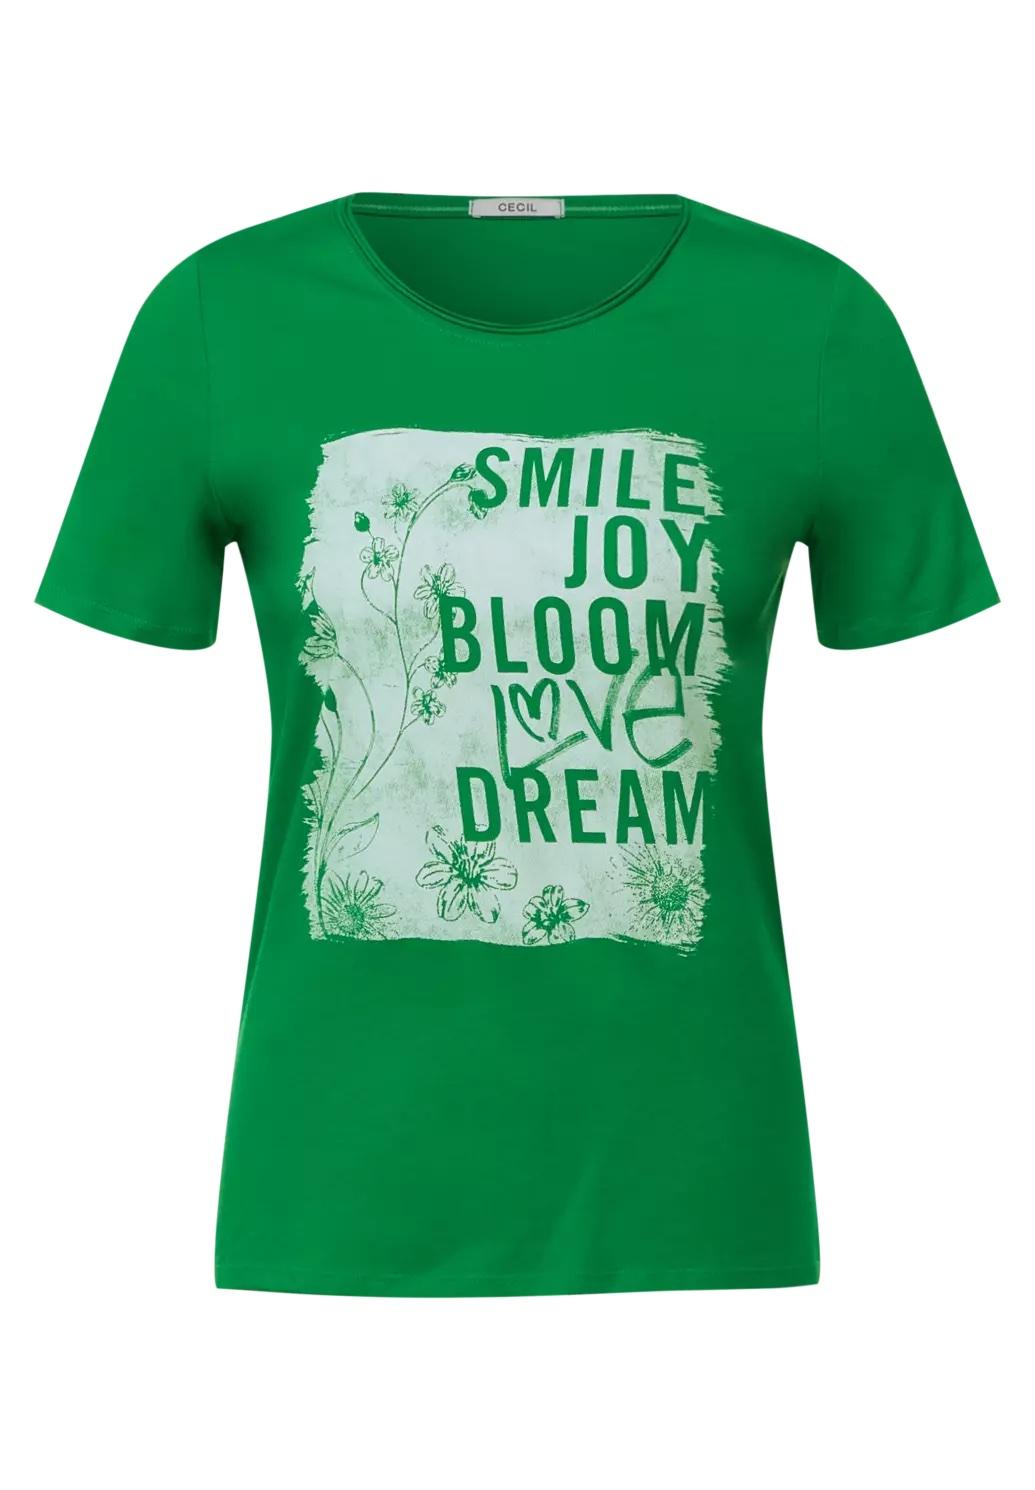 CECIL tričko s fototlačou, SMILE, zel.